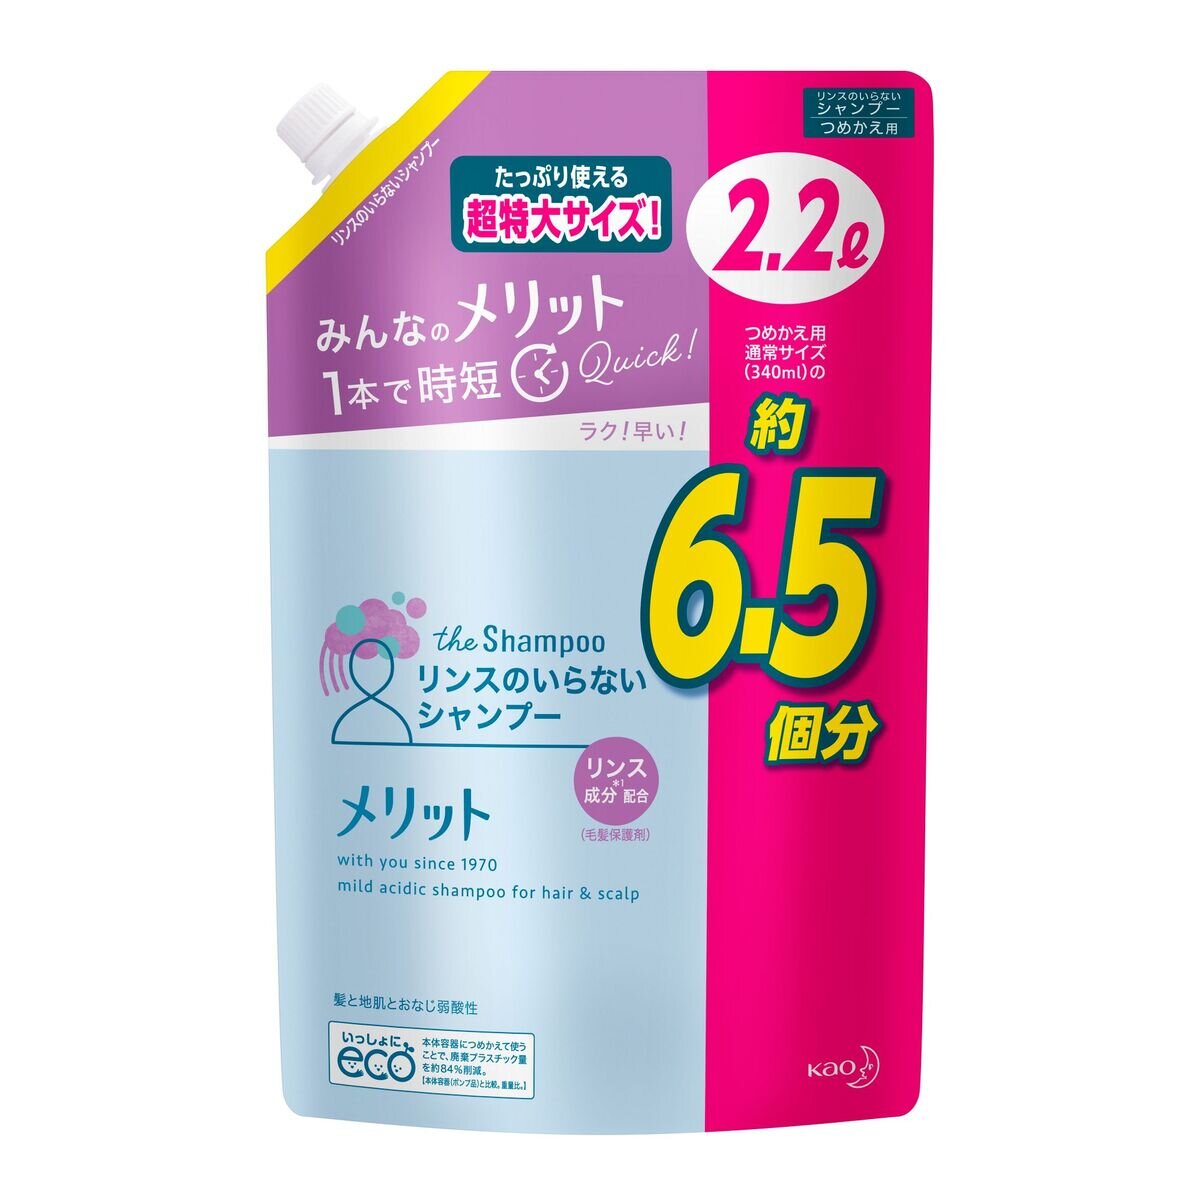 メリット リンスのいらないシャンプー2.2L | Costco Japan